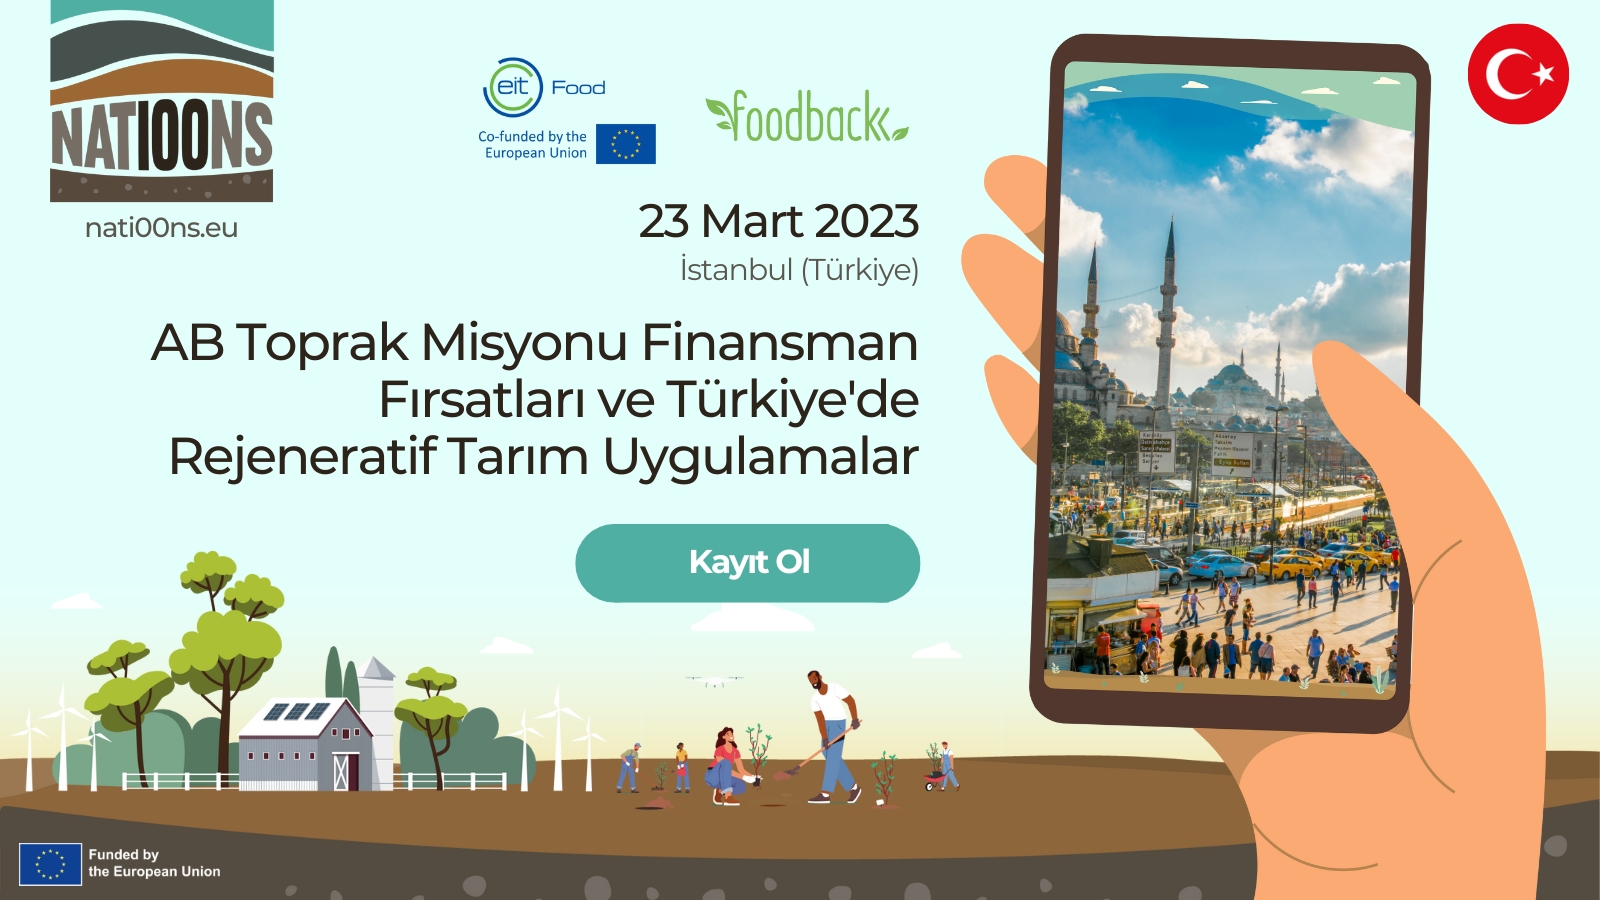 AB Toprak Misyonu Finansman Fırsatları ve Türkiye'de Rejeneratif Tarım Uygulamalar